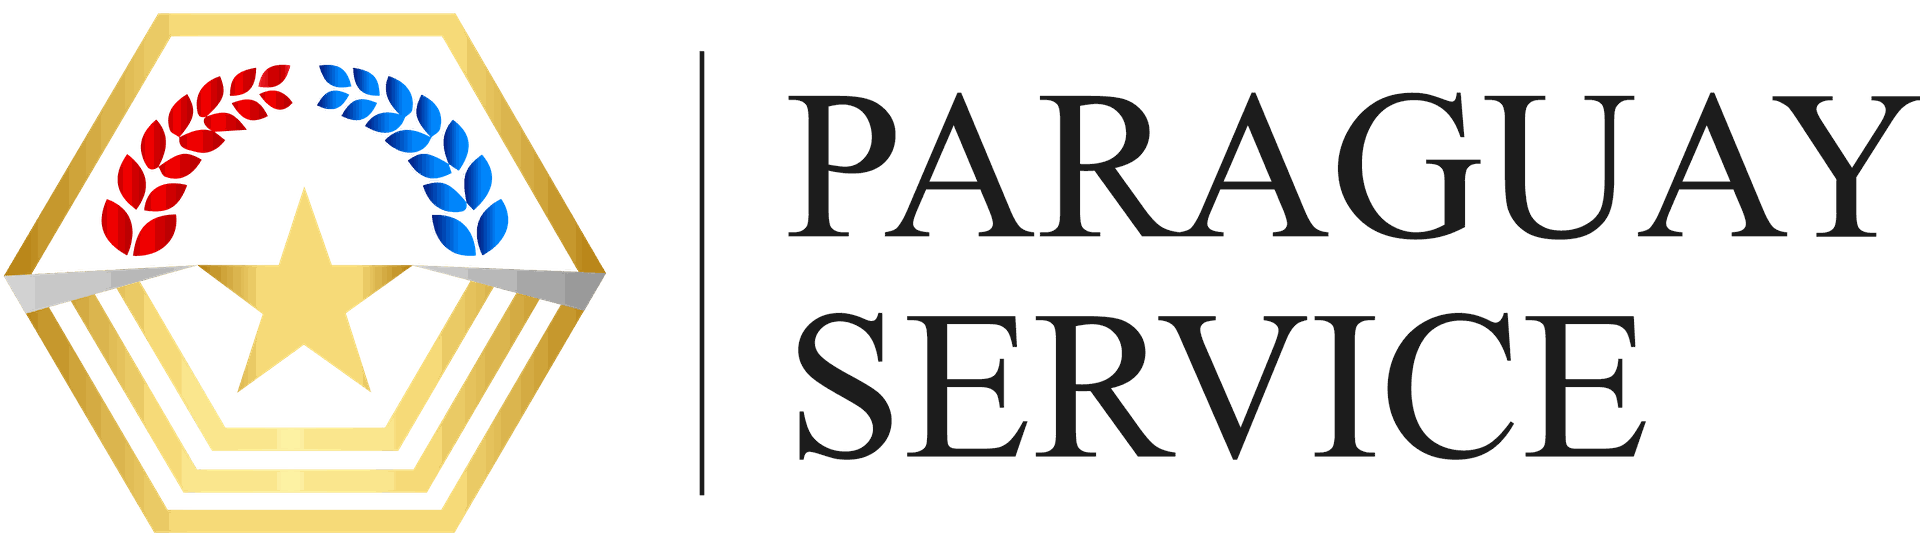 Paraguay Service Portal